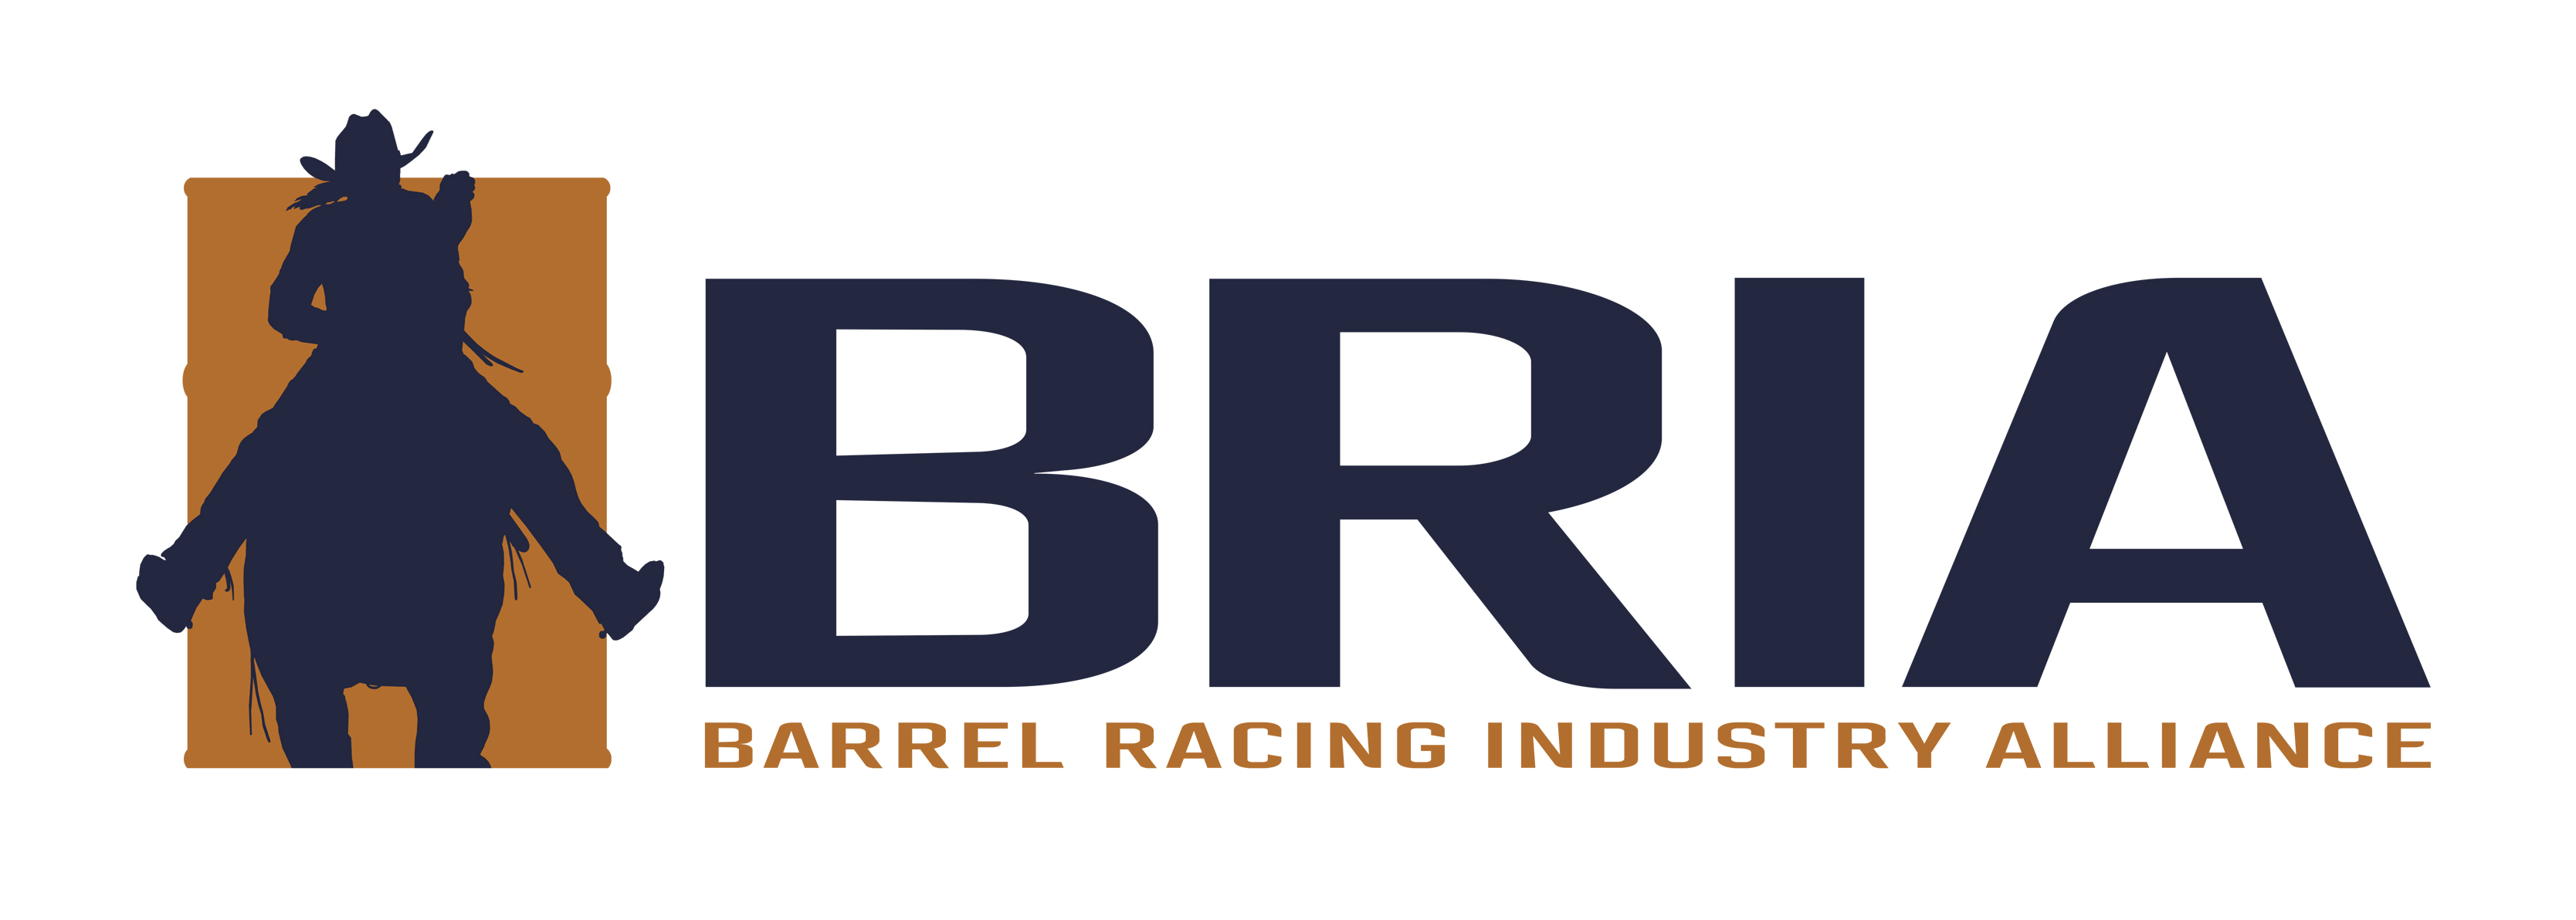 BRIA Logo Final small 9 2021